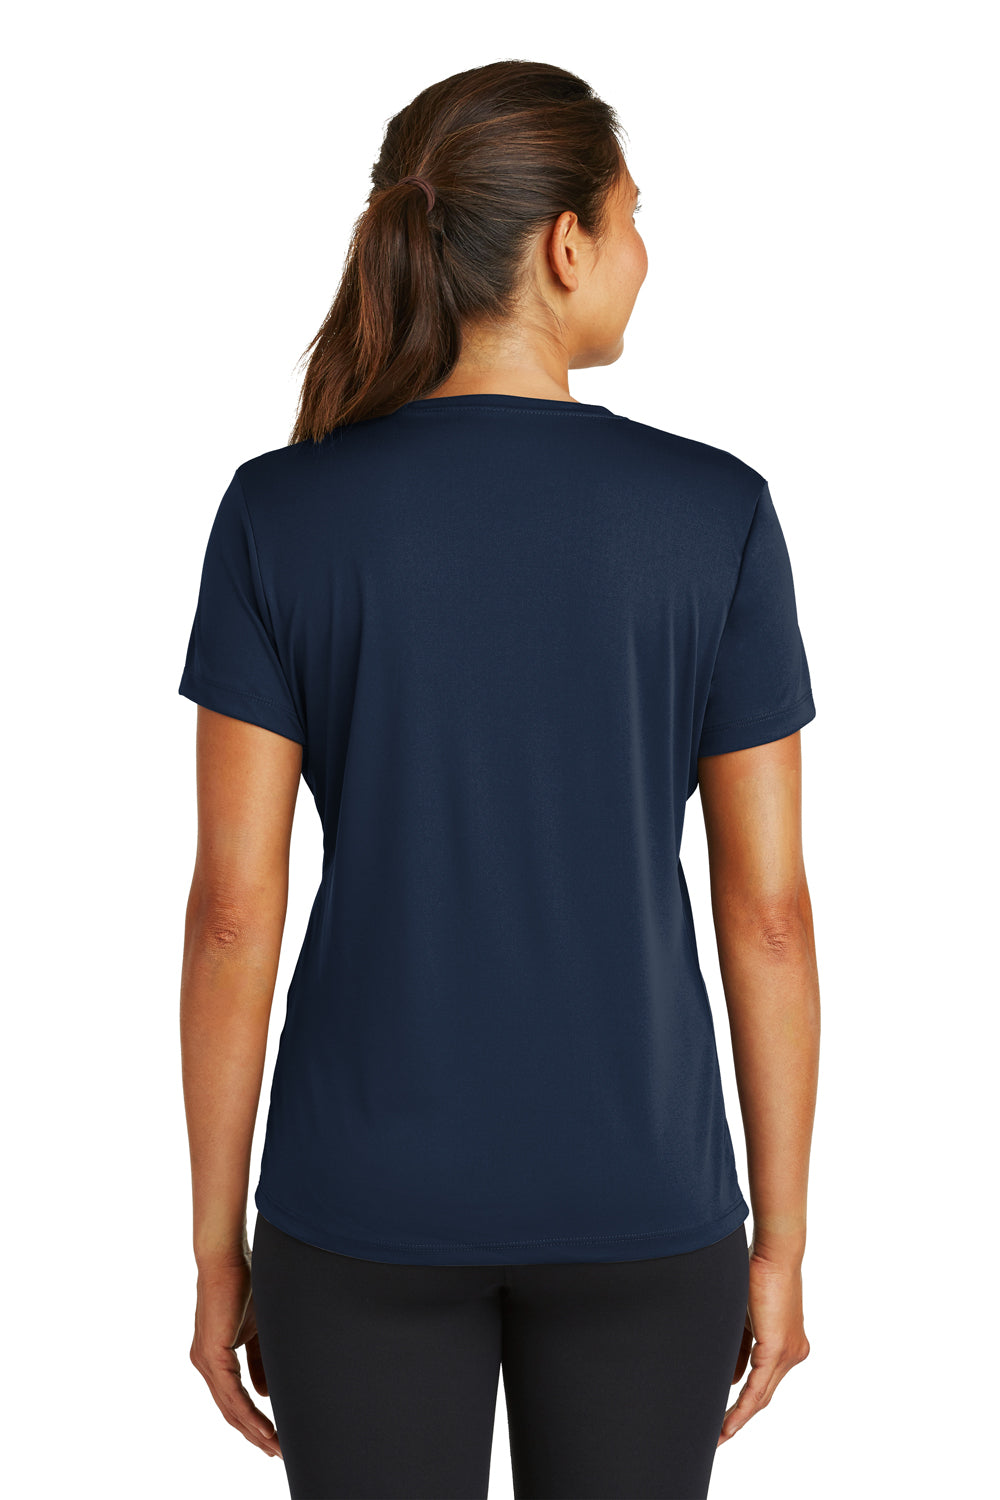 Sport-Tek LST350 Womens Competitor Moisture Wicking Short Sleeve Crewneck T-Shirt Navy Blue Back